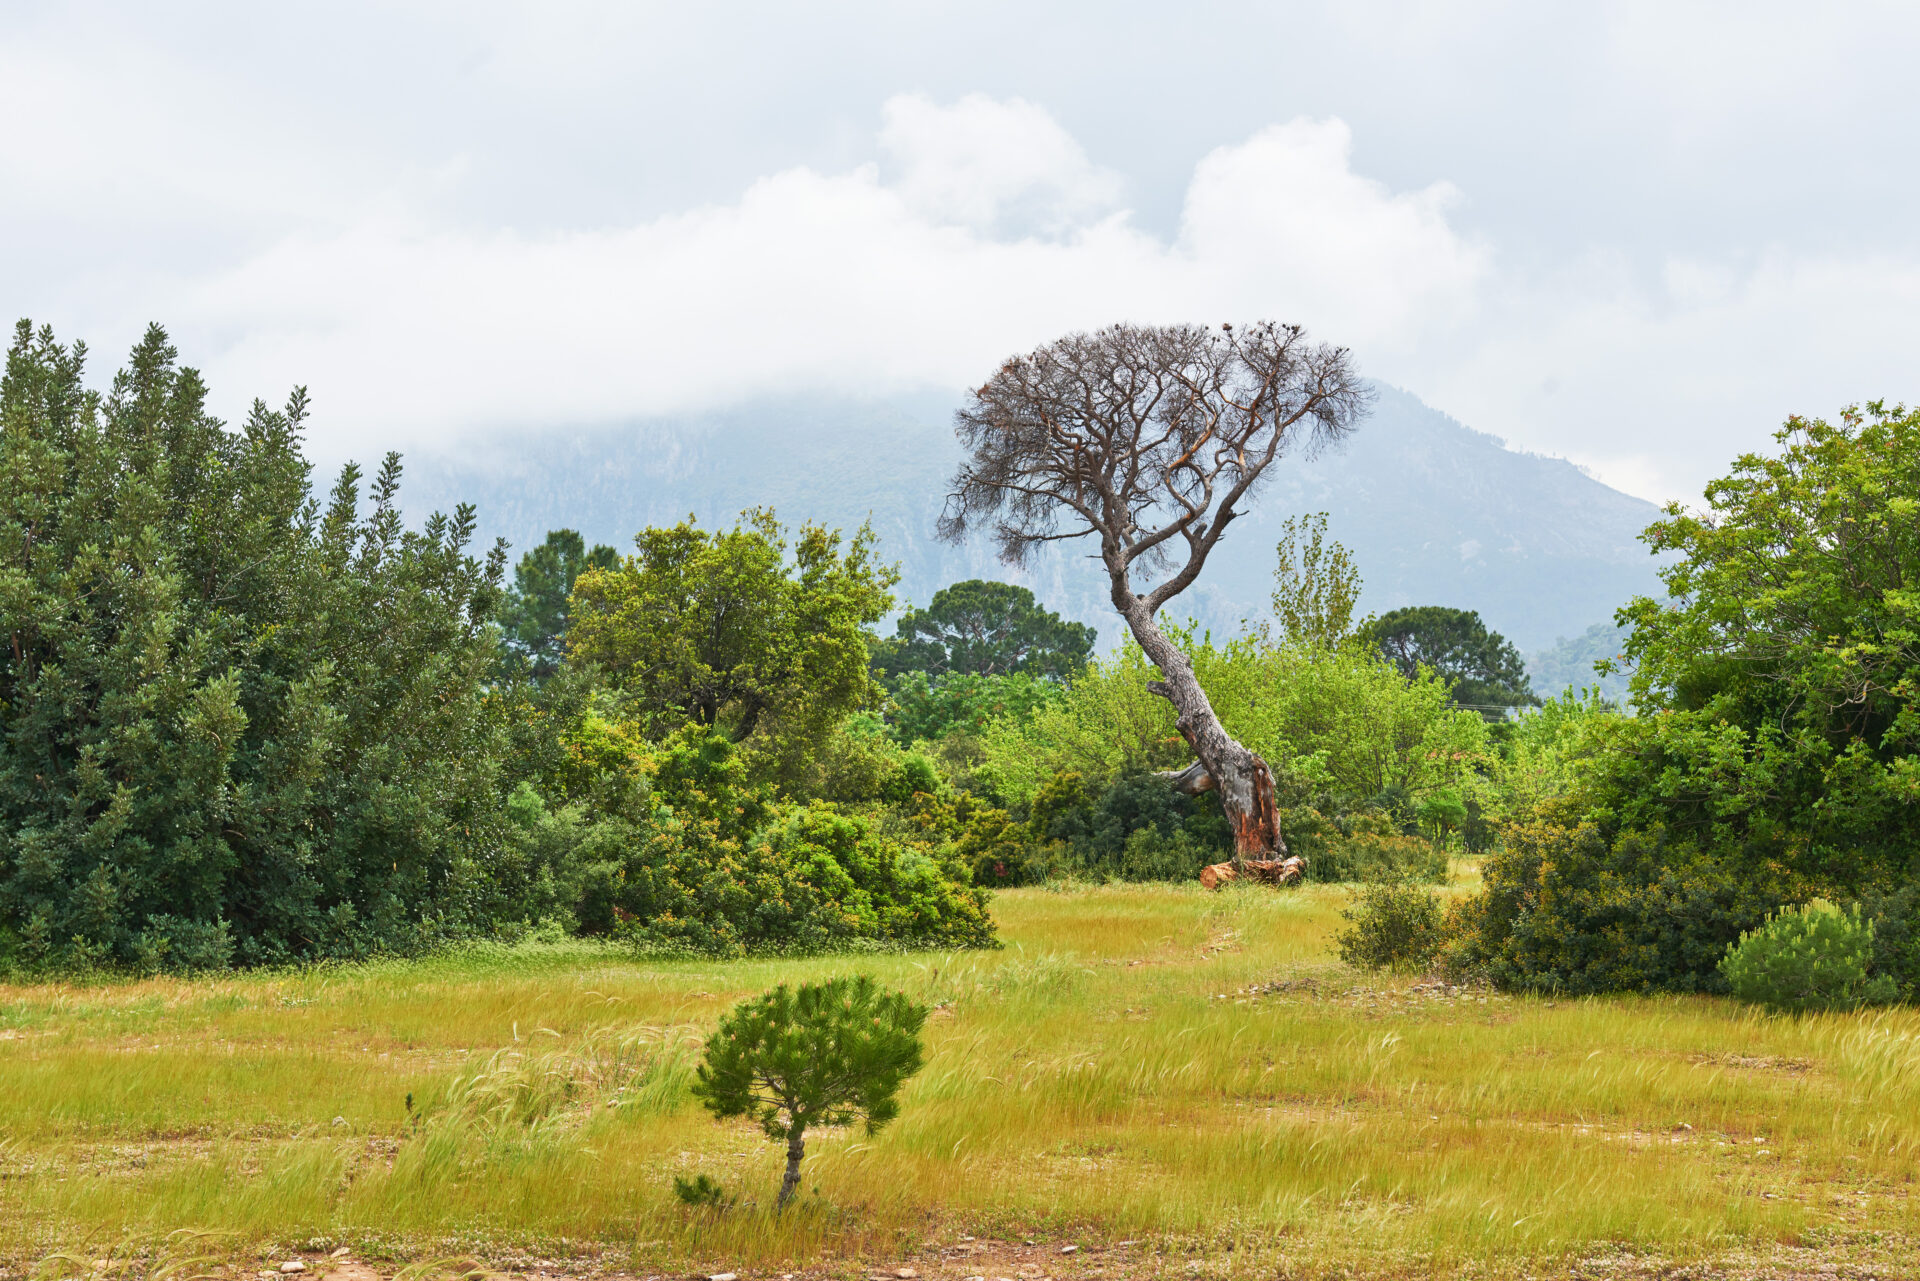 Protecção e reflorestação da floresta na Tanzânia